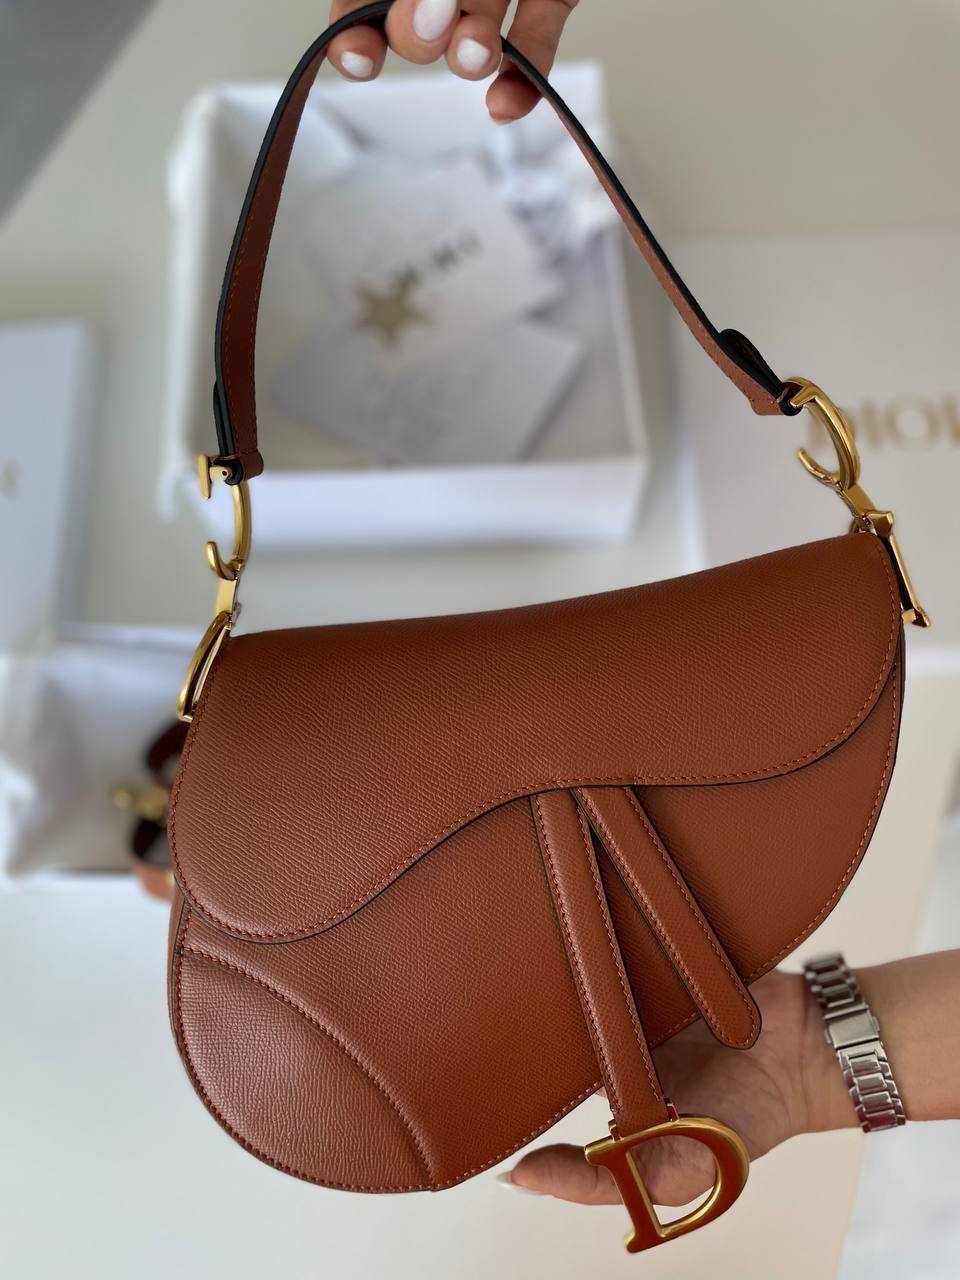 Оригинальная сумочка от Dior Saddle Bag